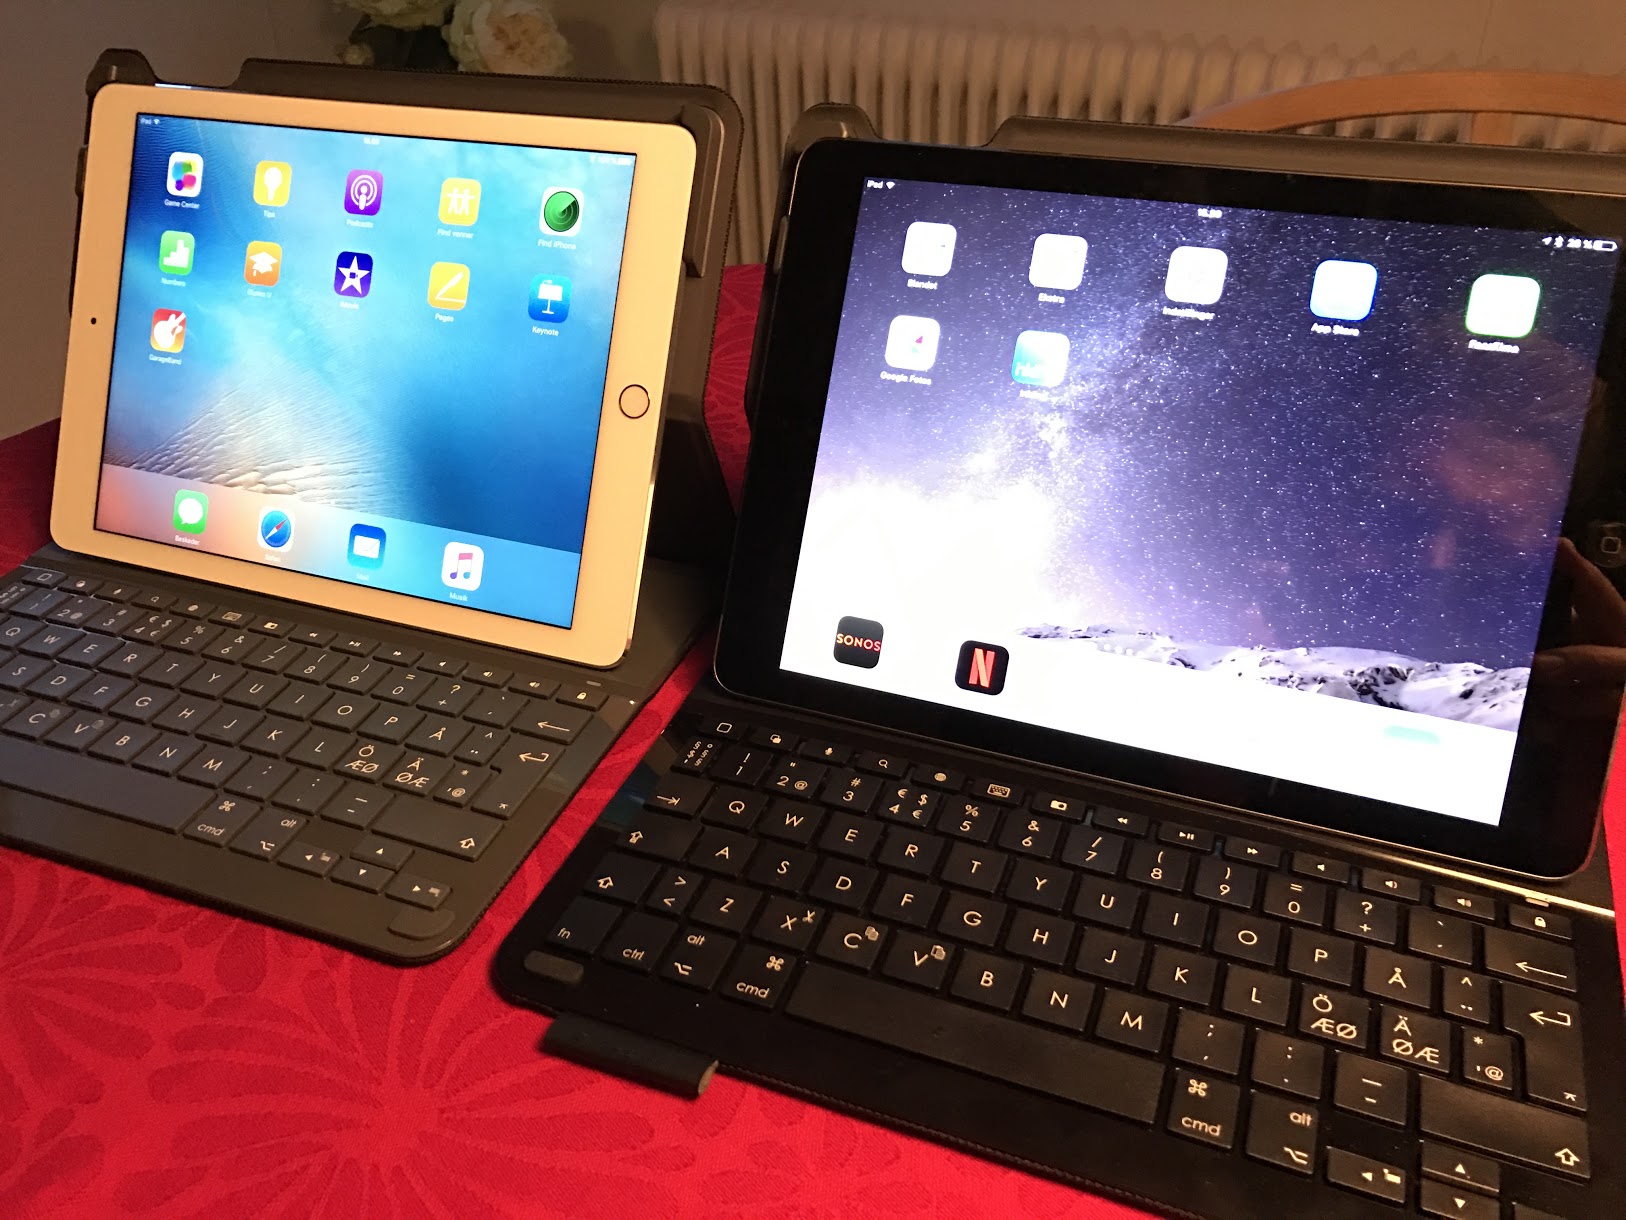 strop Midlertidig røveri Test: Logitech Type+ Keyboard til Ipad Air og iPad Air 2 - Livets små ting